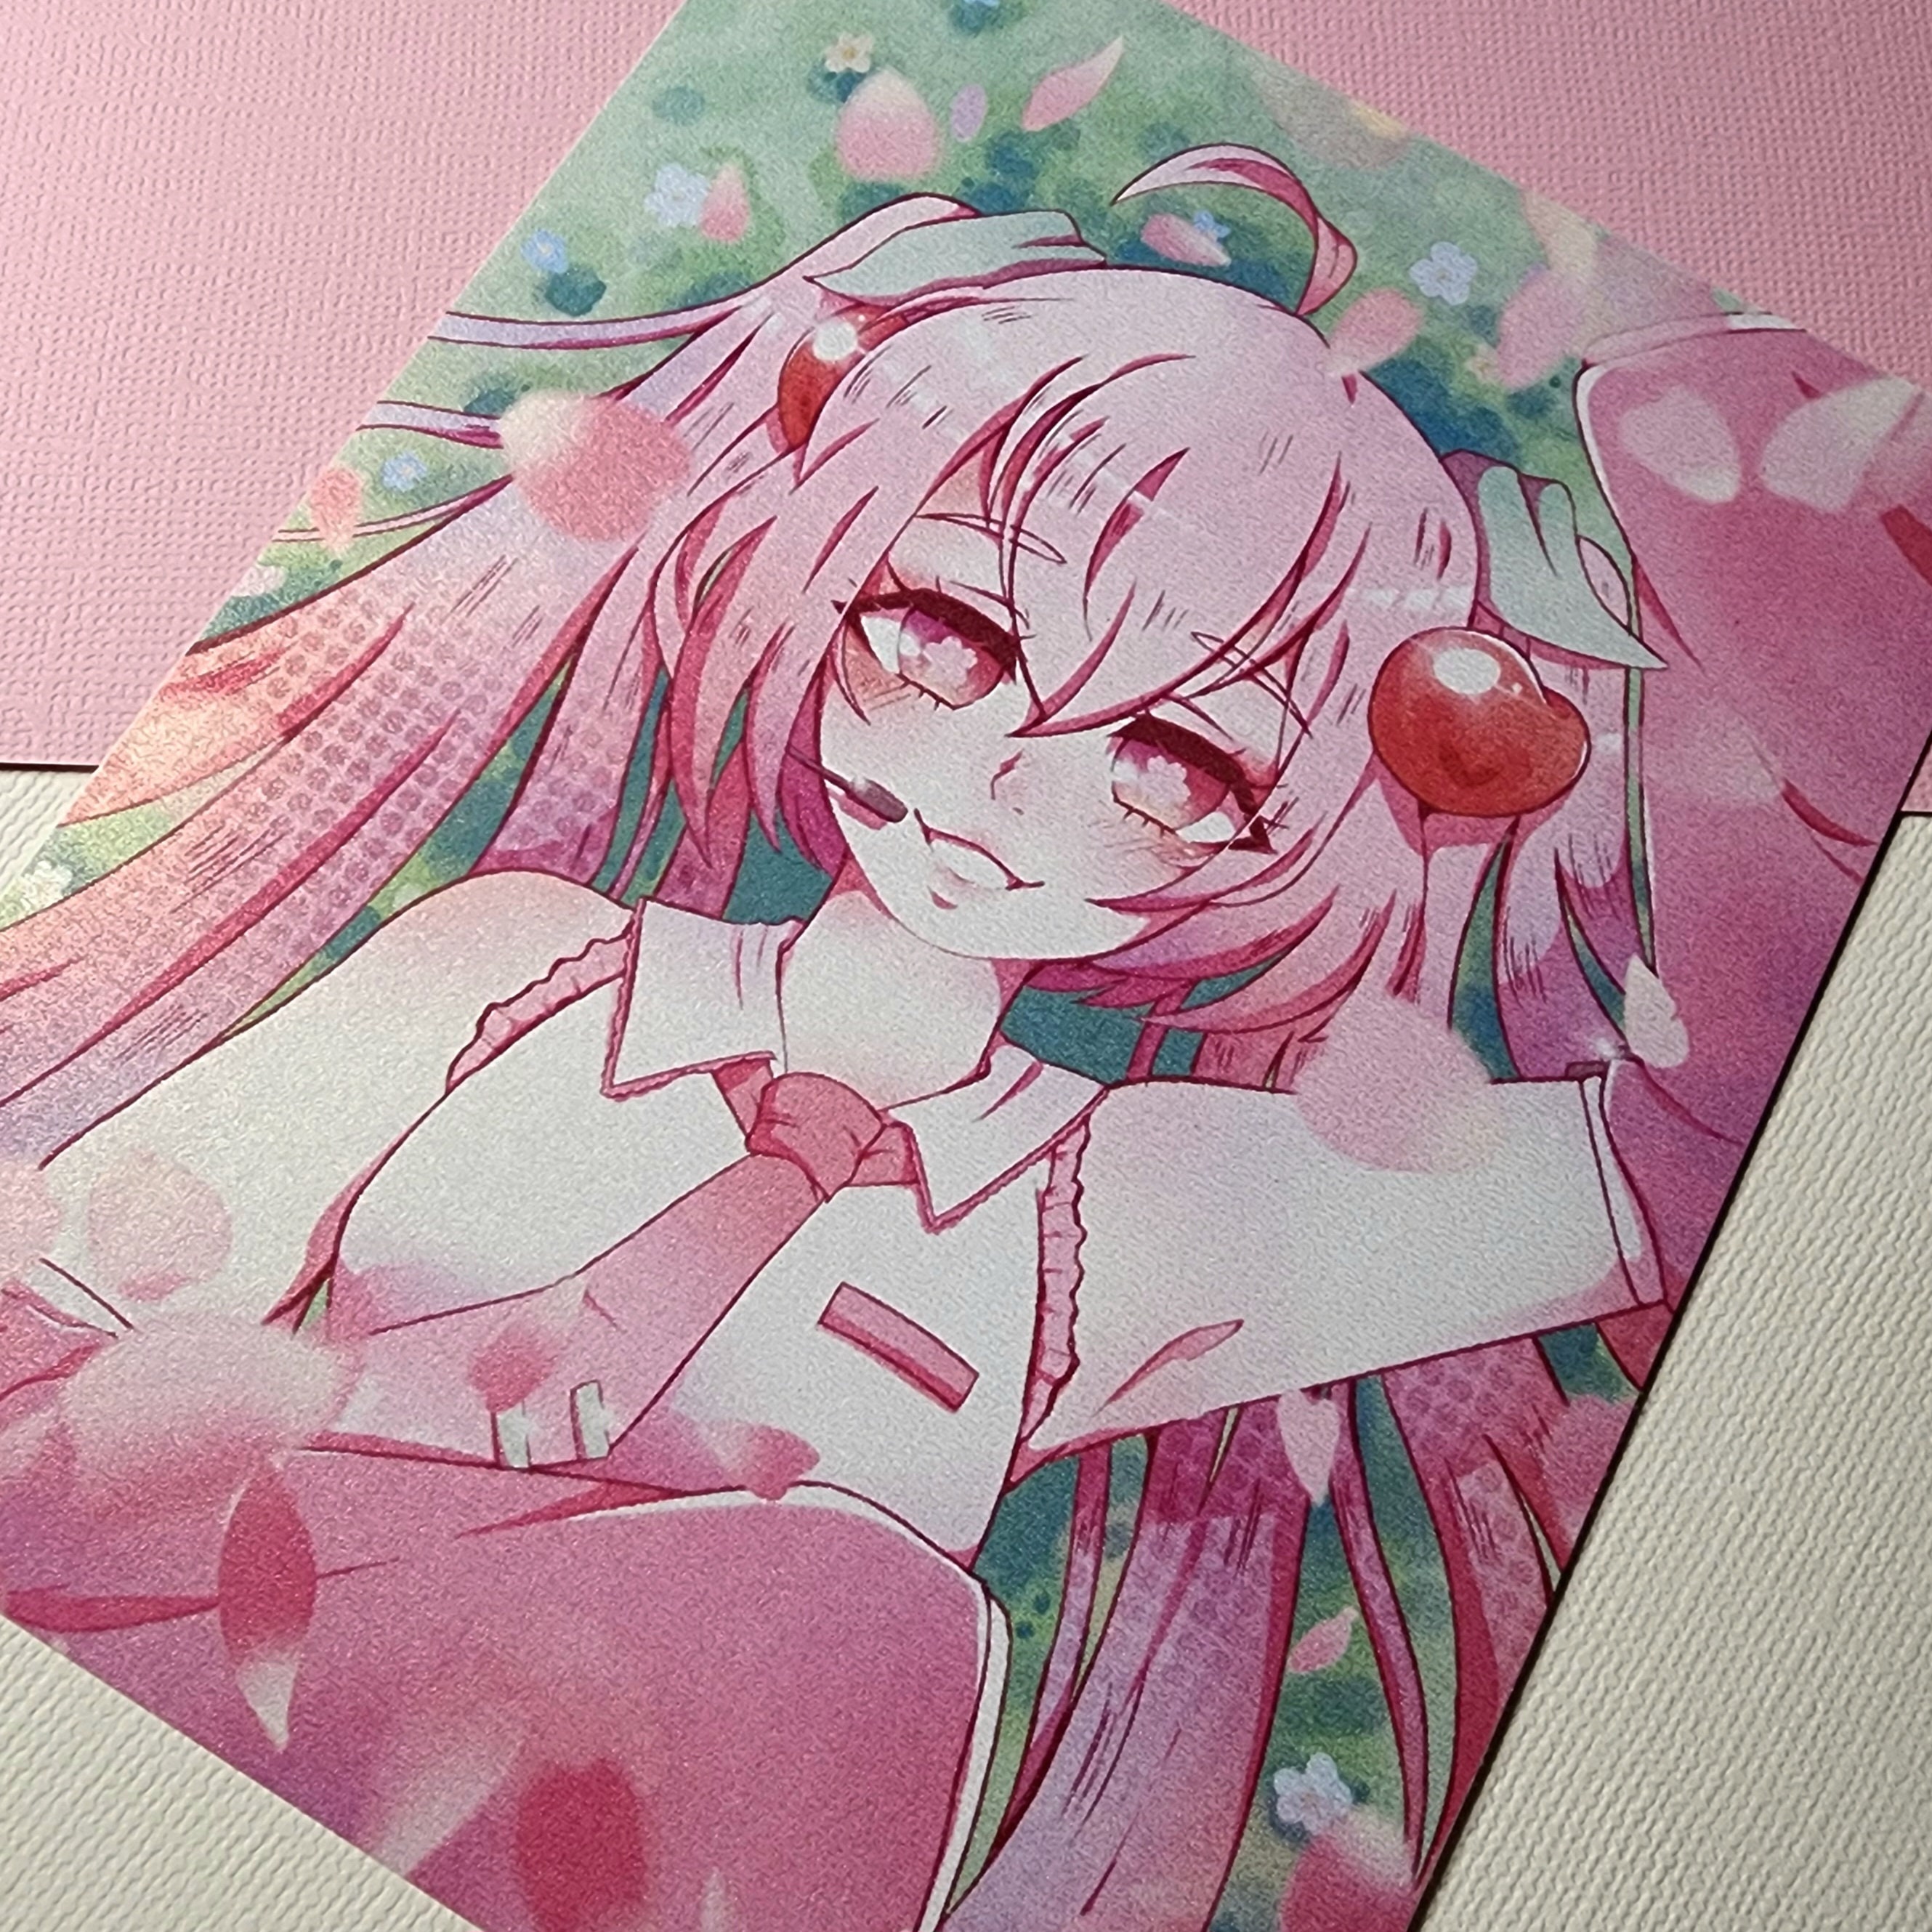 Sakura Hatsune Miku Sticker — PrinceMizu